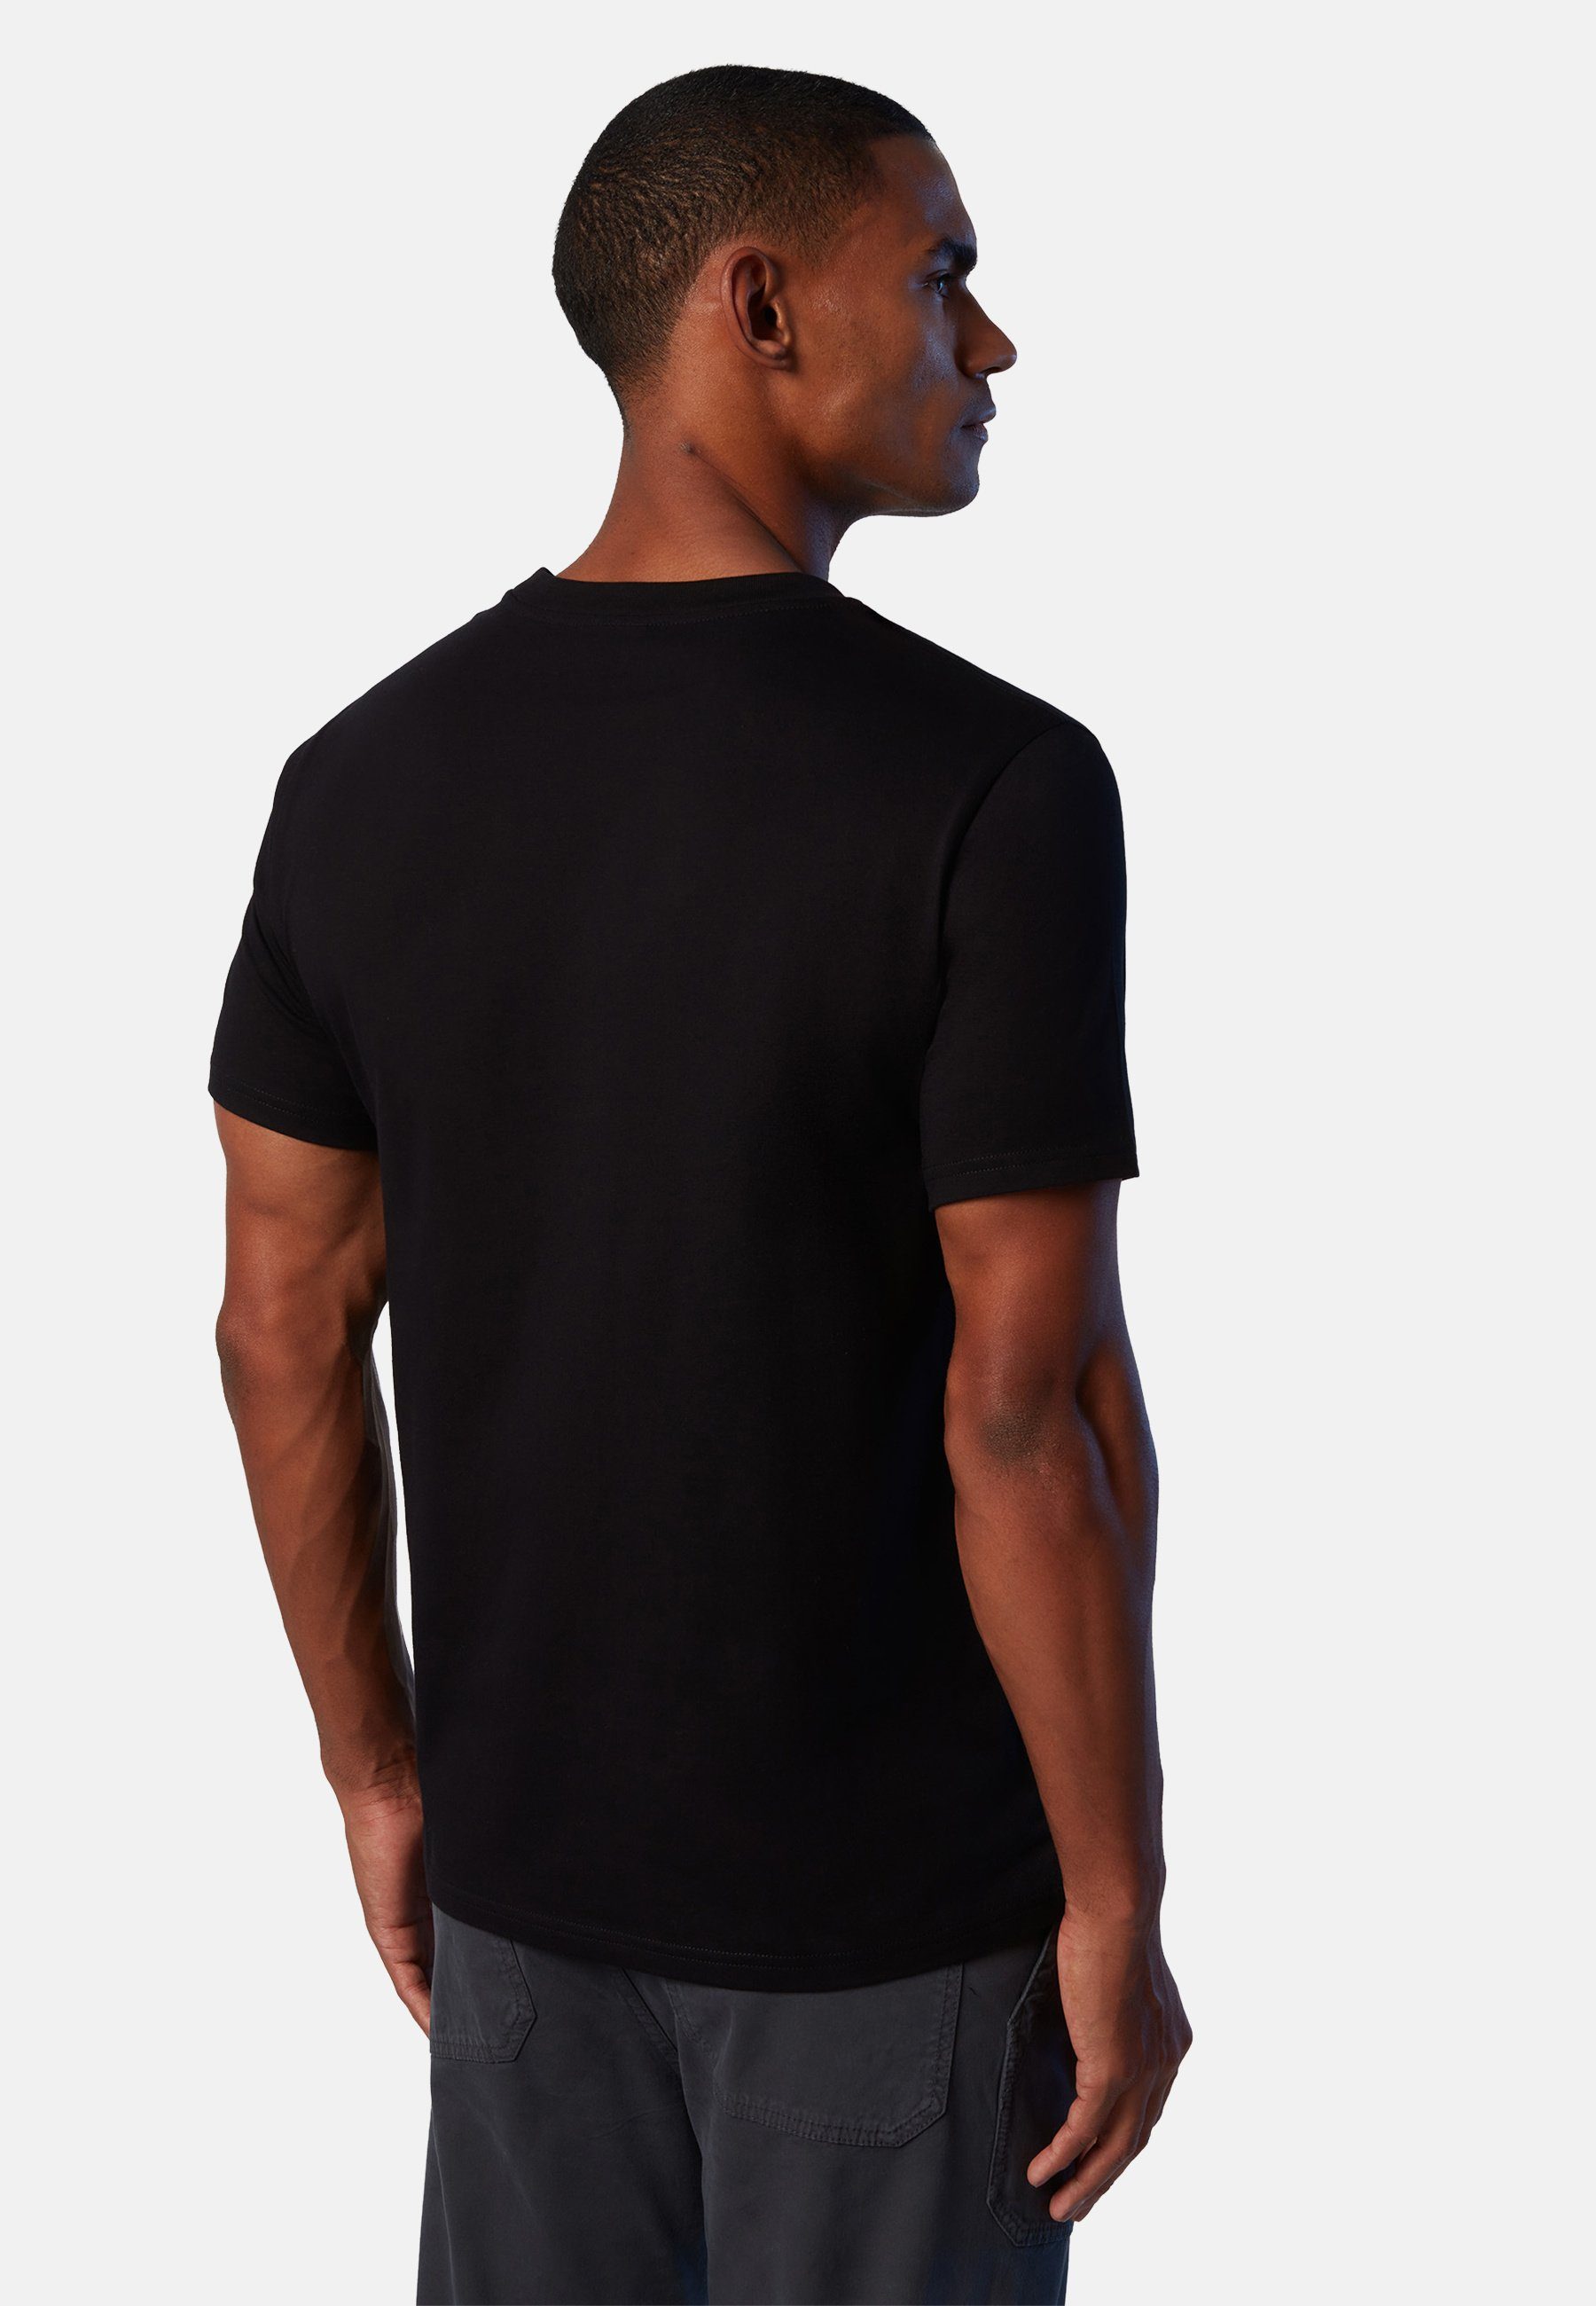 Logo-Druck mit North BLACK MILKY mit klassischem T-Shirt Sails Design T-Shirt